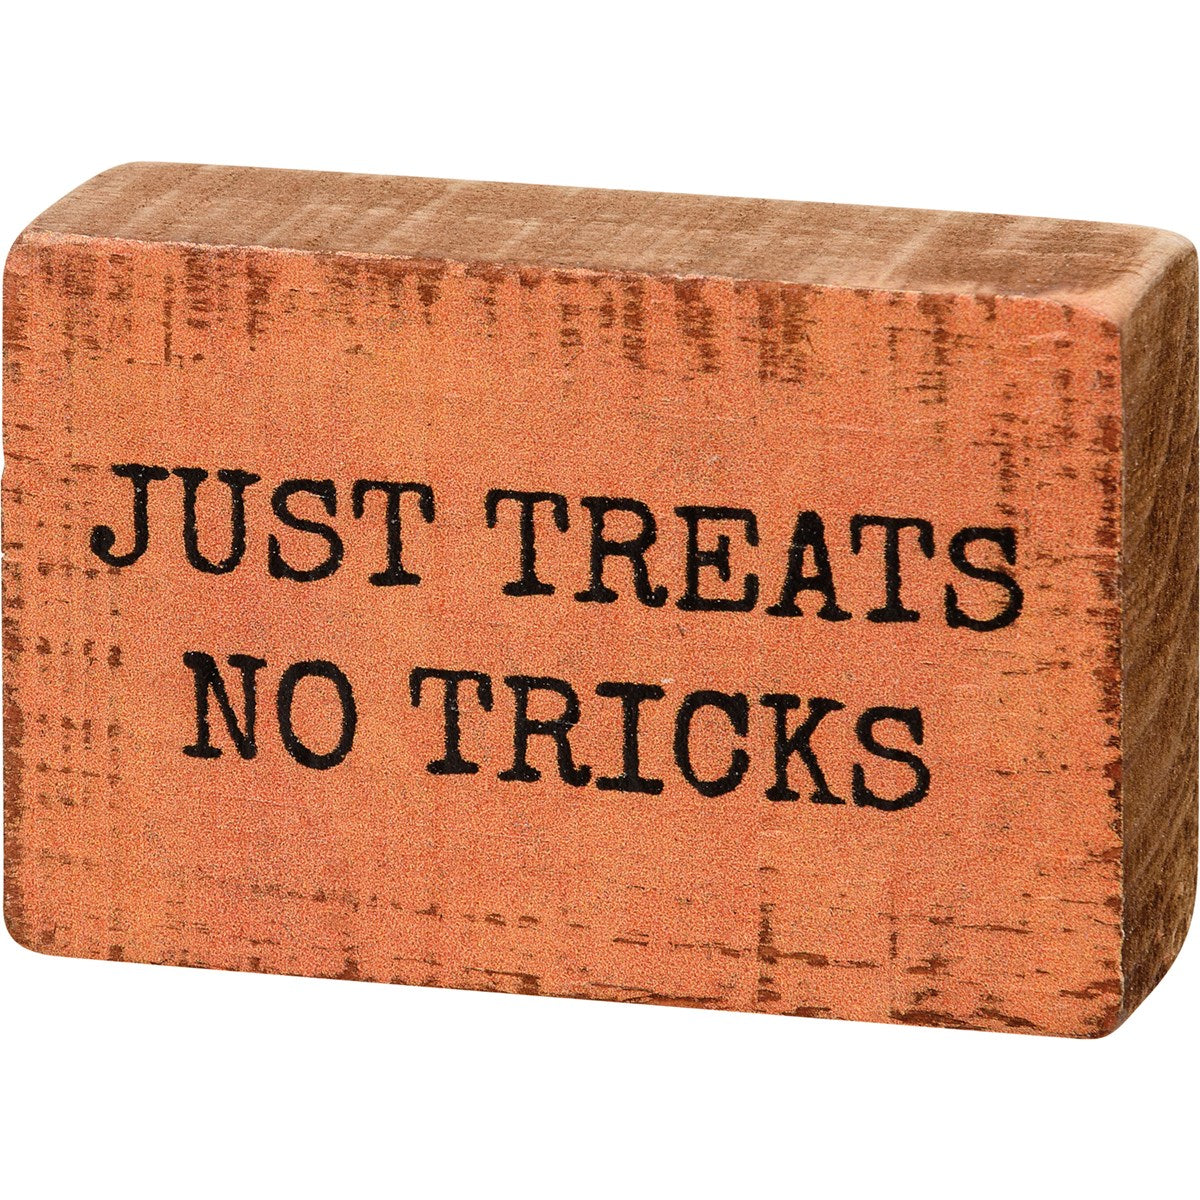 Just Treats No Tricks Block Sign